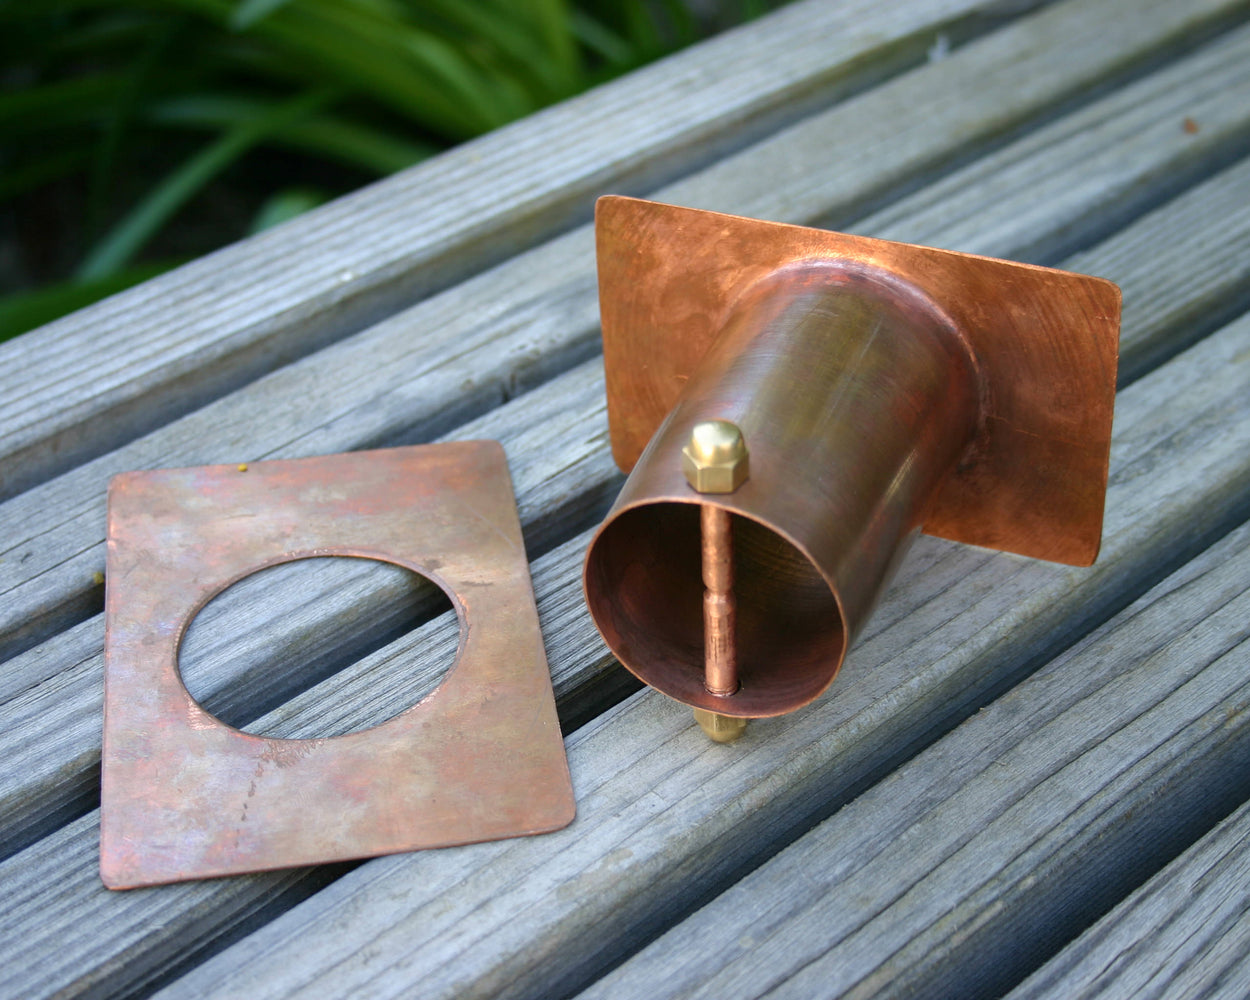 solid copper rain chain installation kit